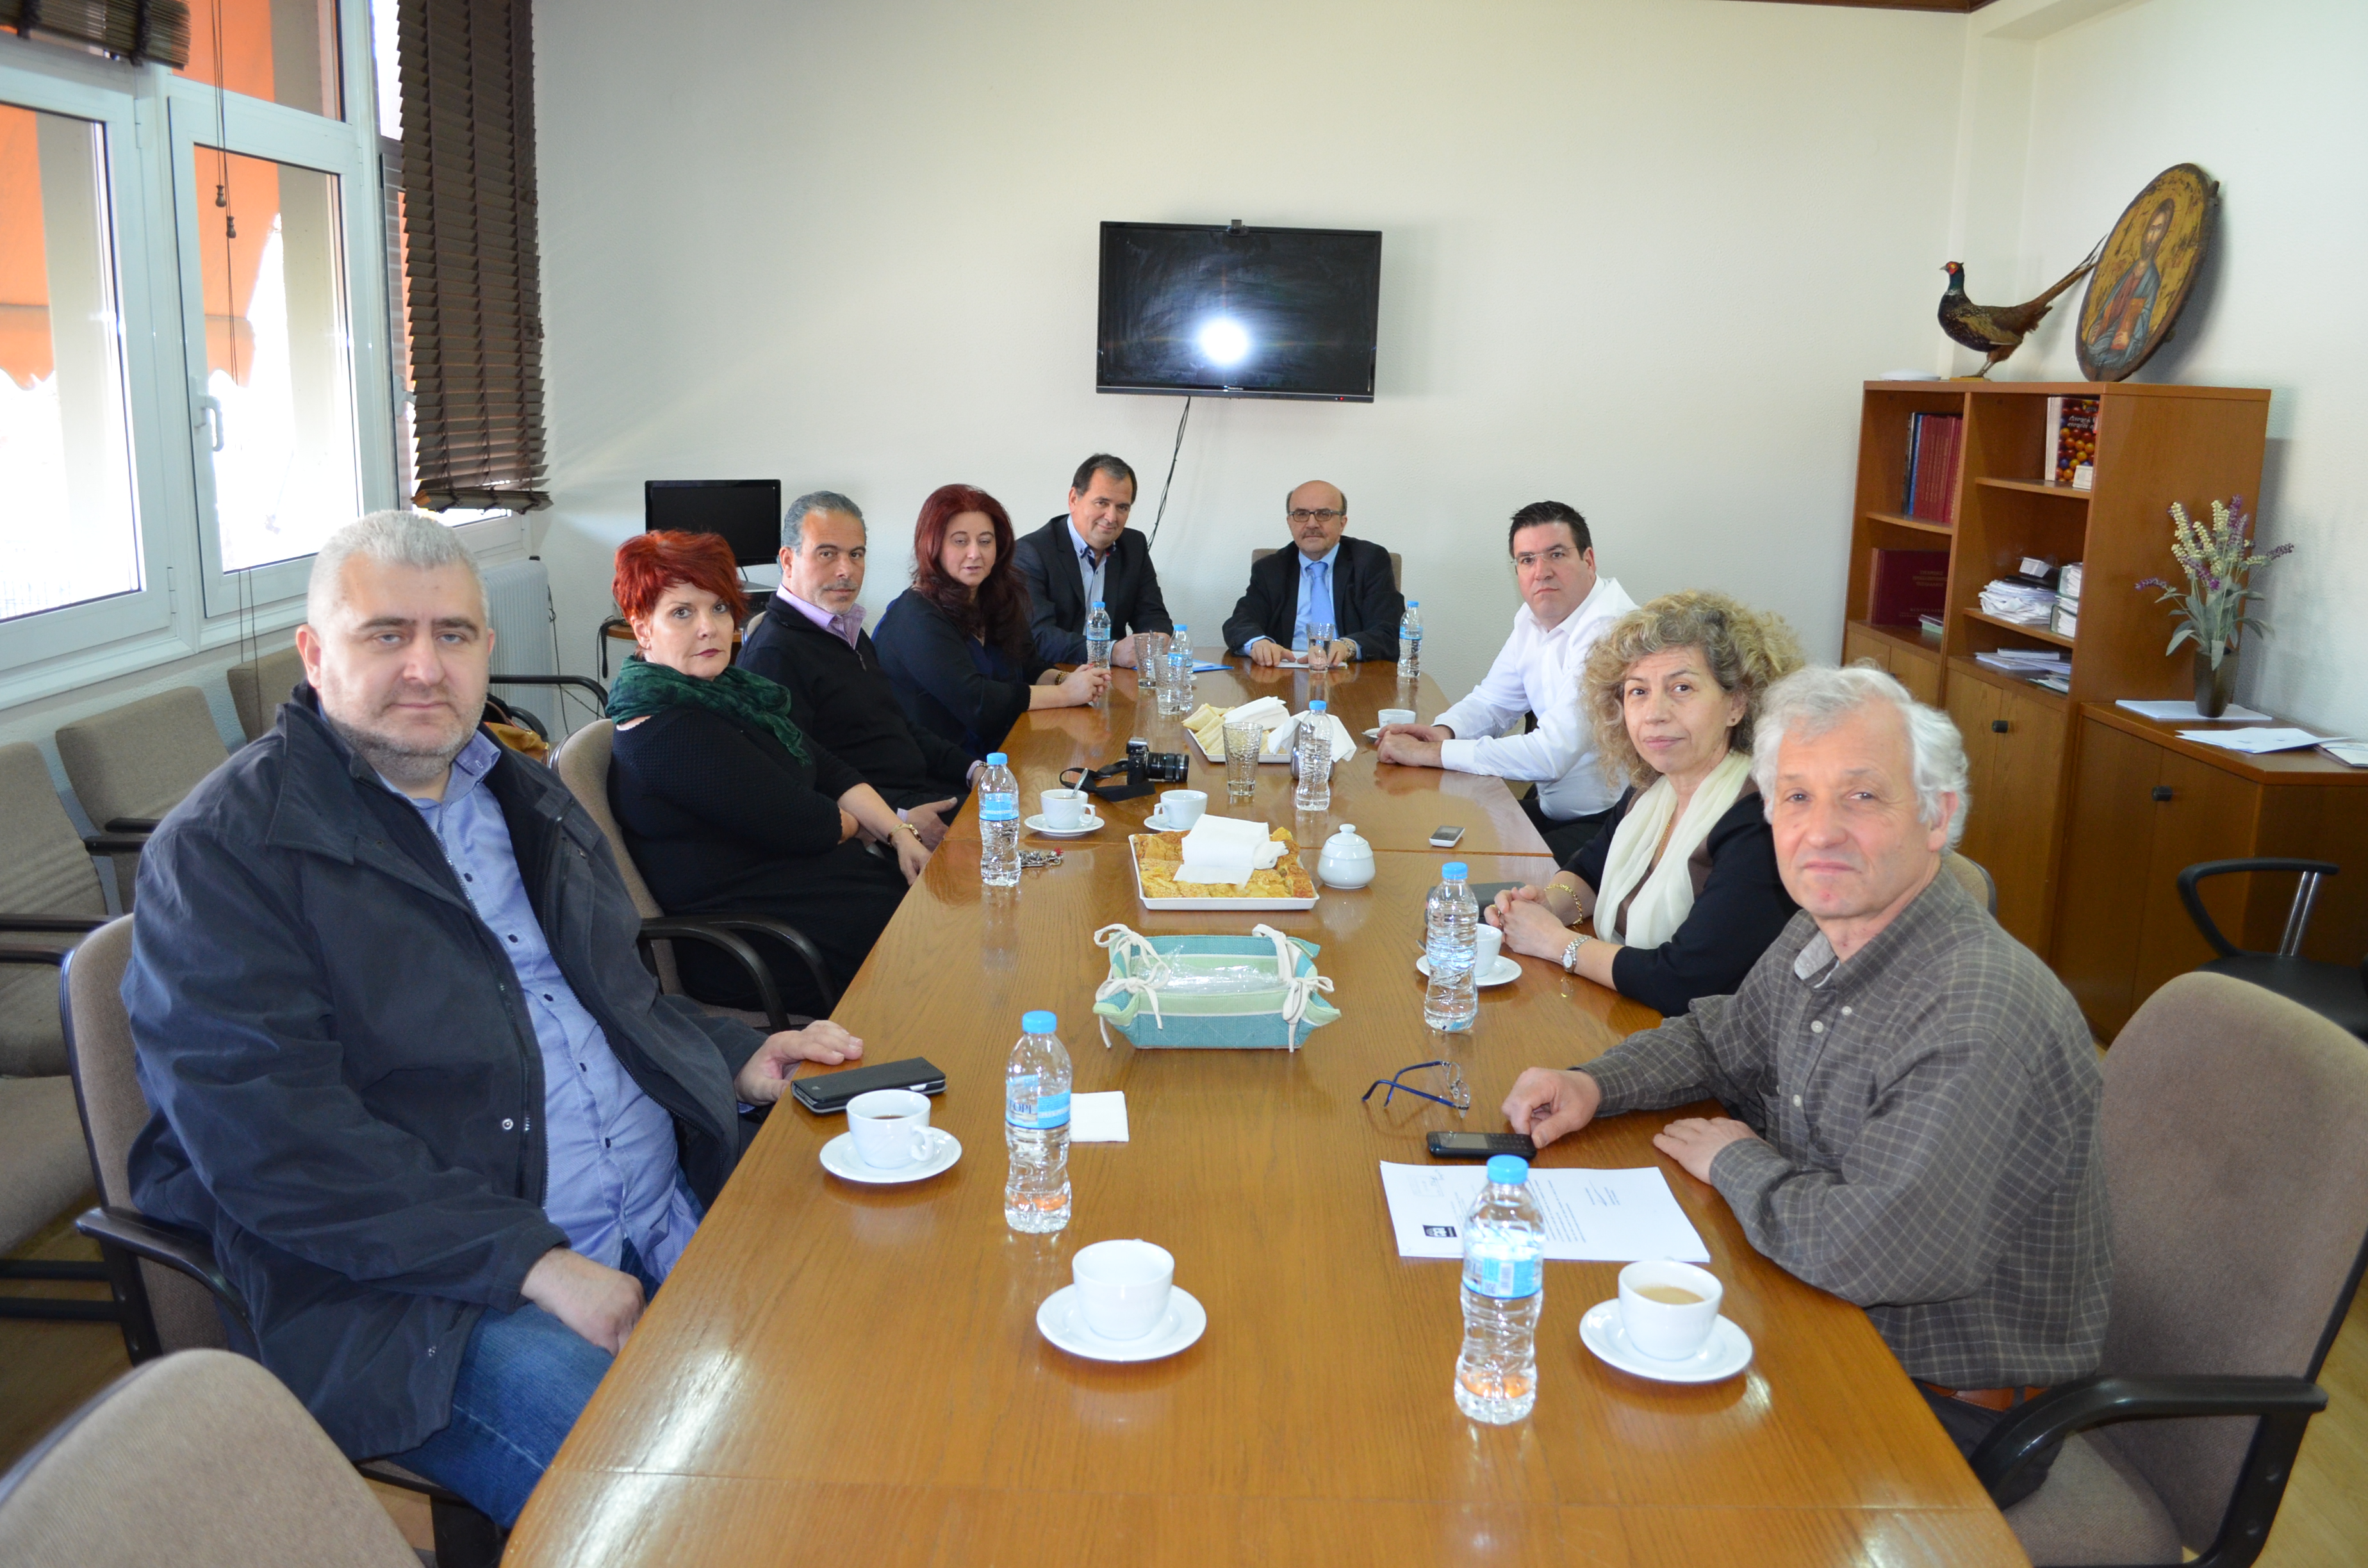 Συνεργασία ΤΕΙ Θεσσαλίας και Πανεπιστημιακού Νοσοκομείου για την υλοποίηση προγραμμάτων